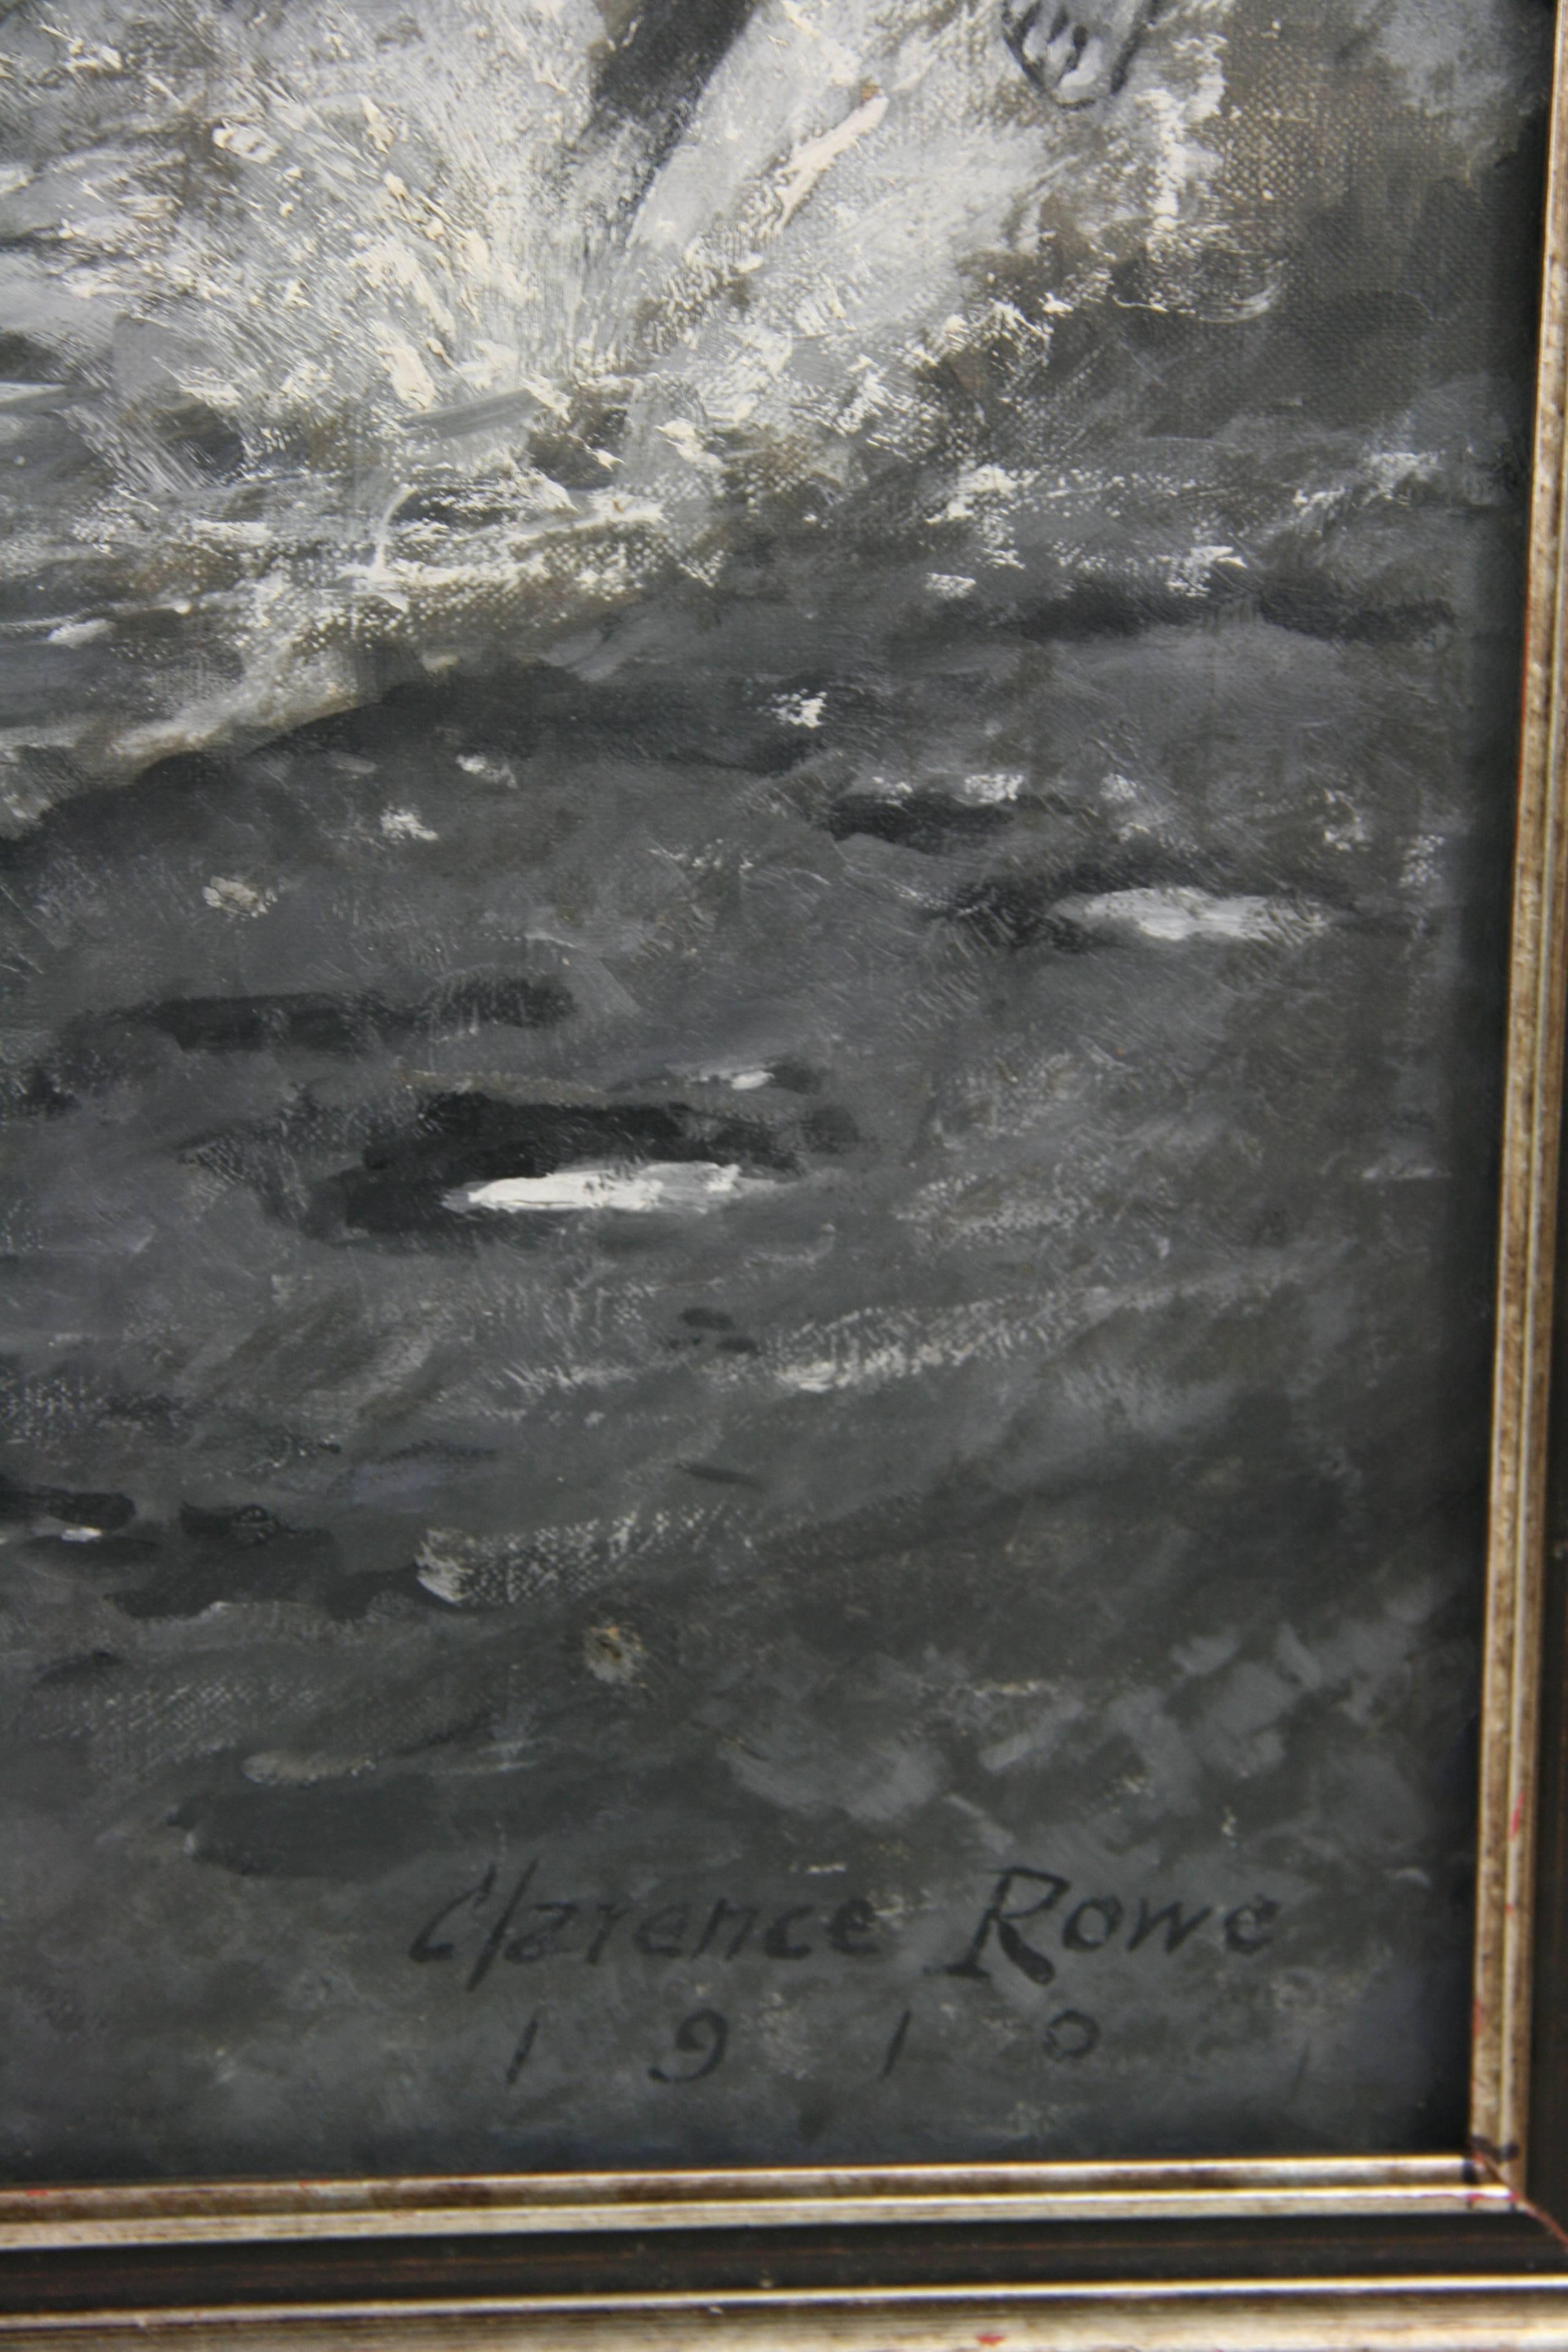 #5-2779a  Peinture équestre River Crossing, huile sur toile en noir et blanc des années 1910, signée en bas à droite par Clarence Rowe 1910.
Usure due à l'âge
Non encadré